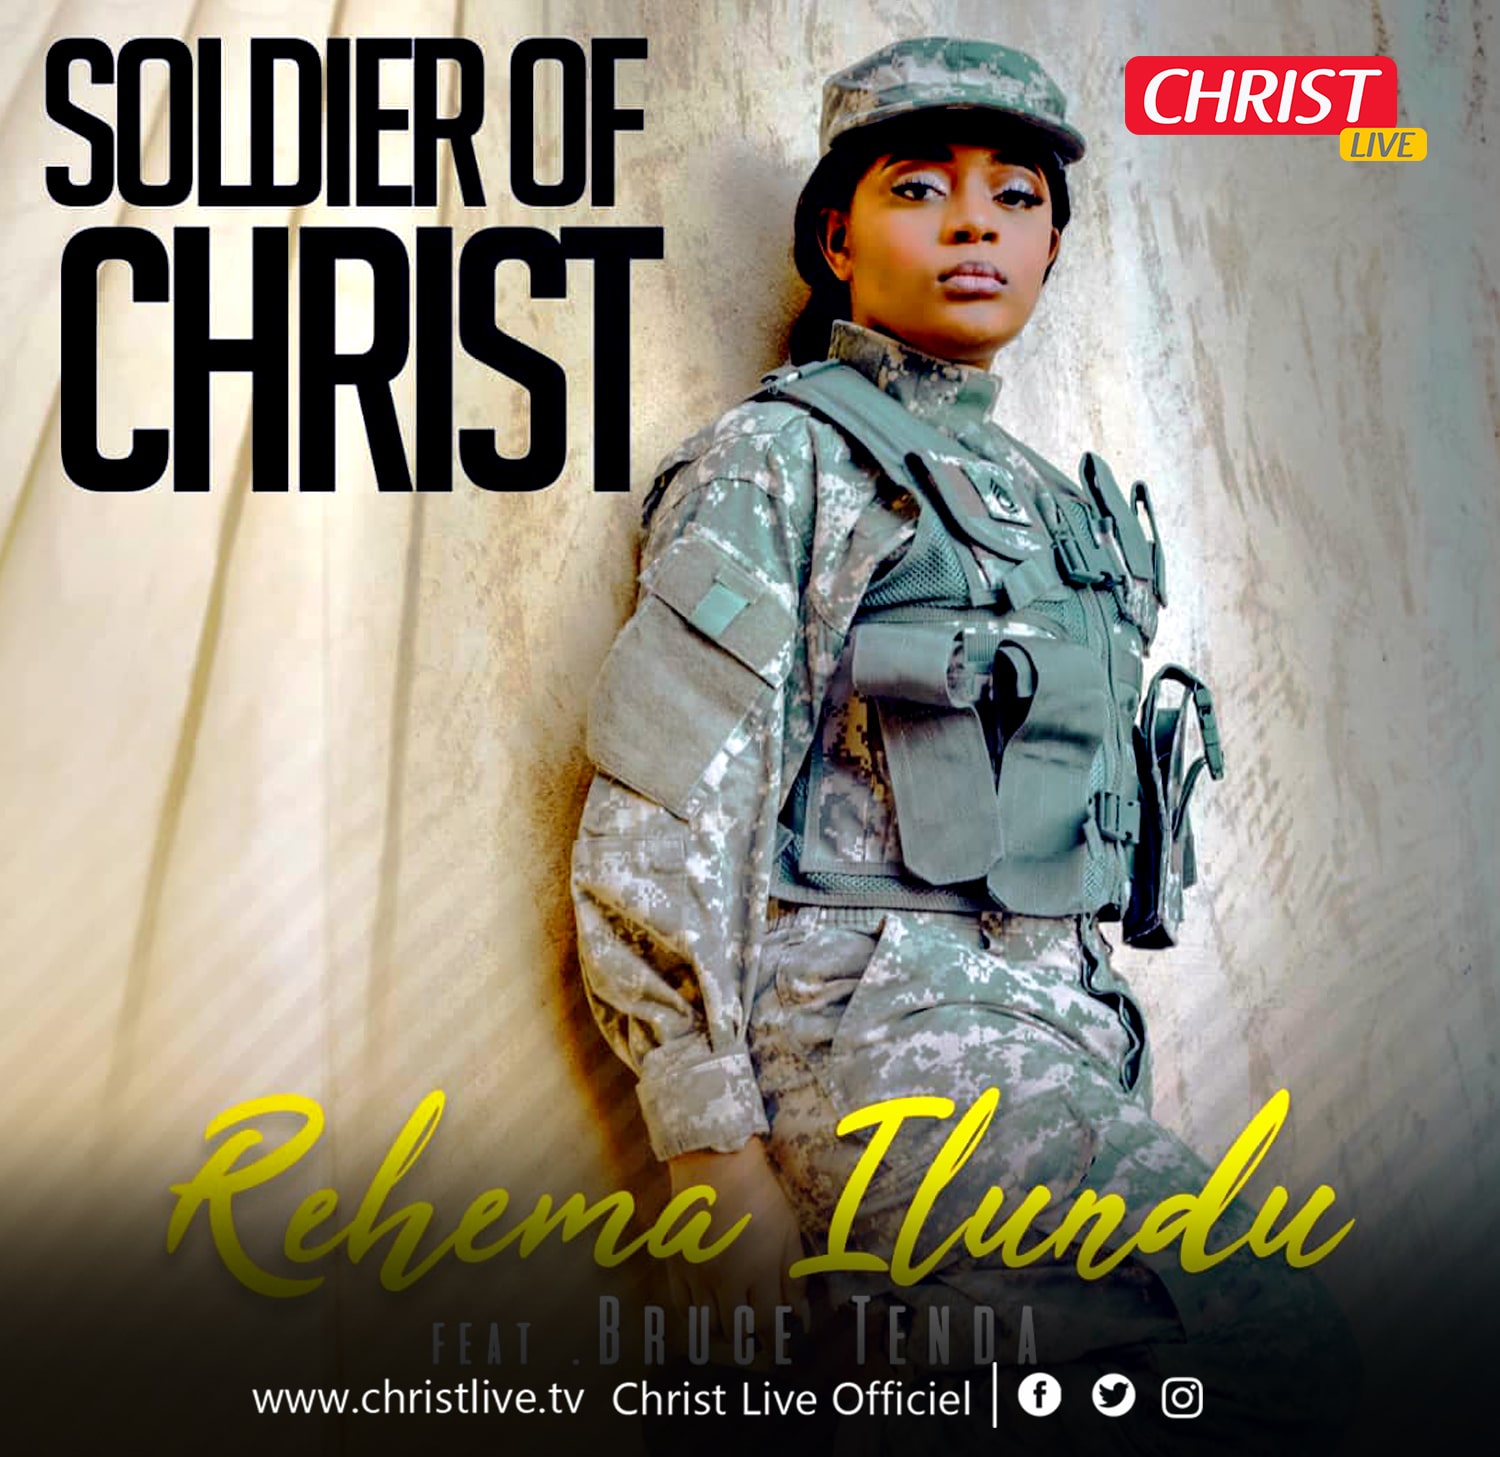 Prêt pour la bataille avec la « Soldier of Christ » Rehema Ilundu.